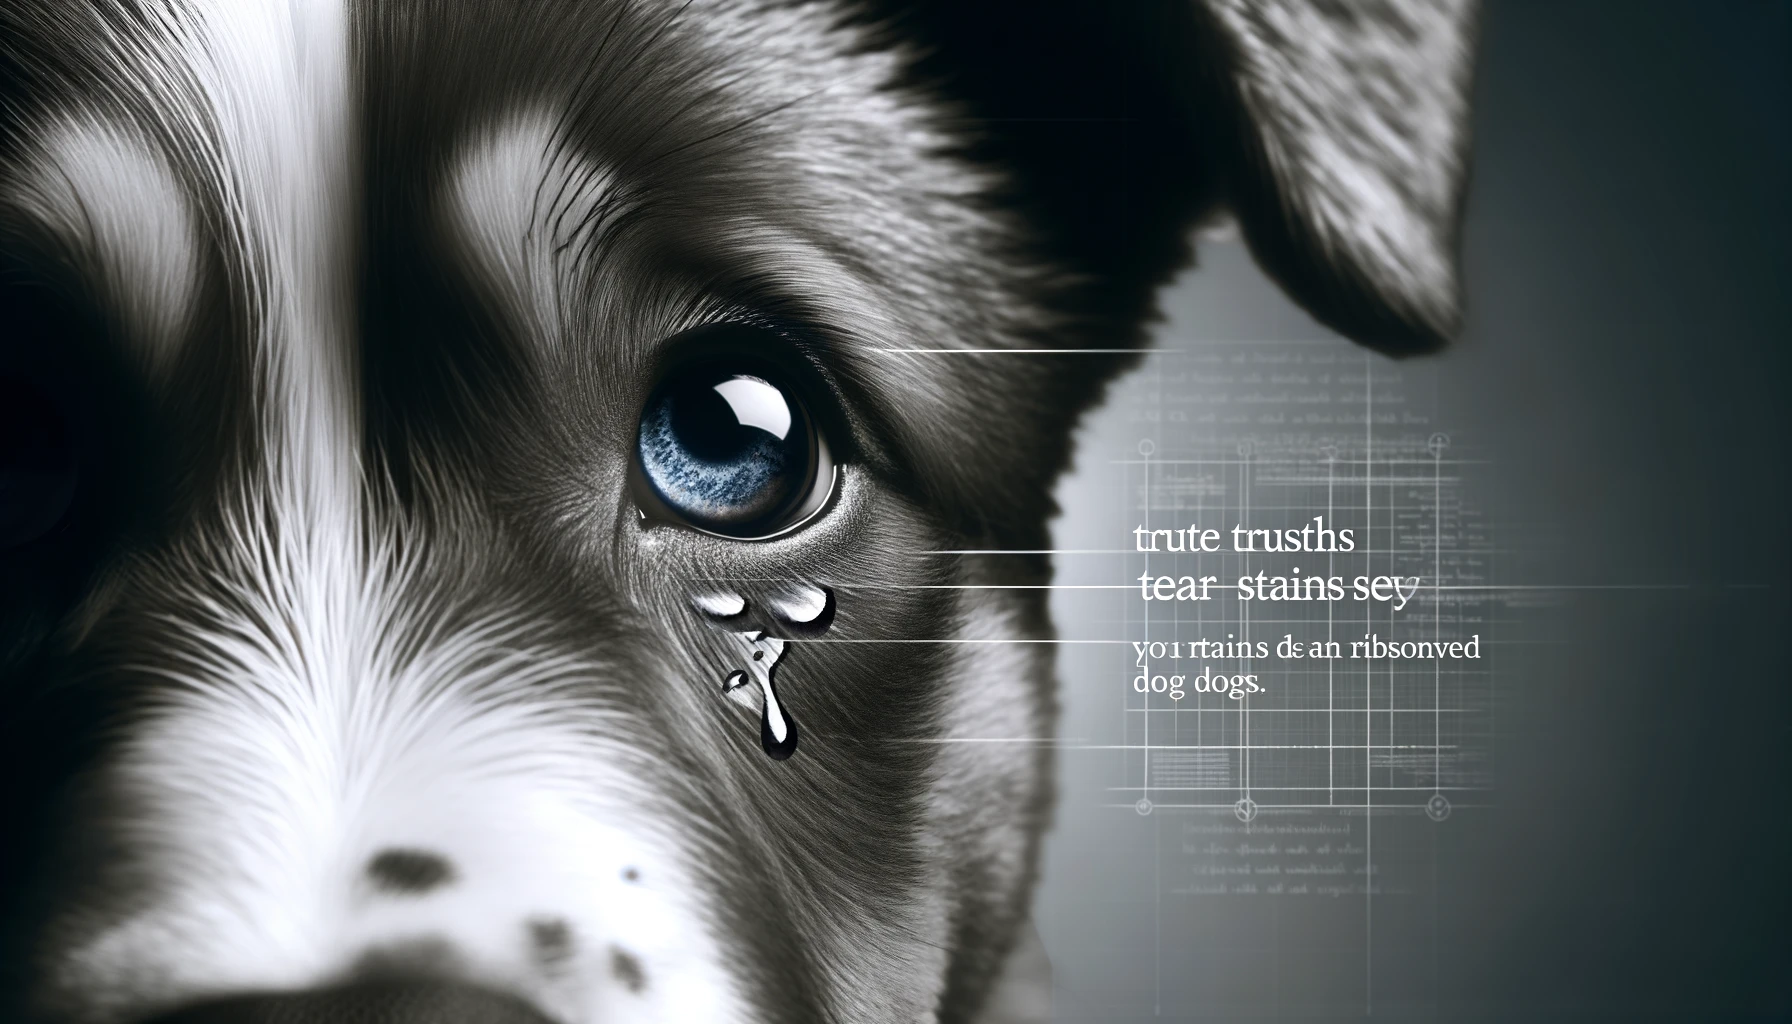 特定のドッグフードによって涙やけが解決されない背後にある真実を探るために、目に焦点を当てた犬の顔のクローズアップ画像で、涙やけの兆候が見られます。